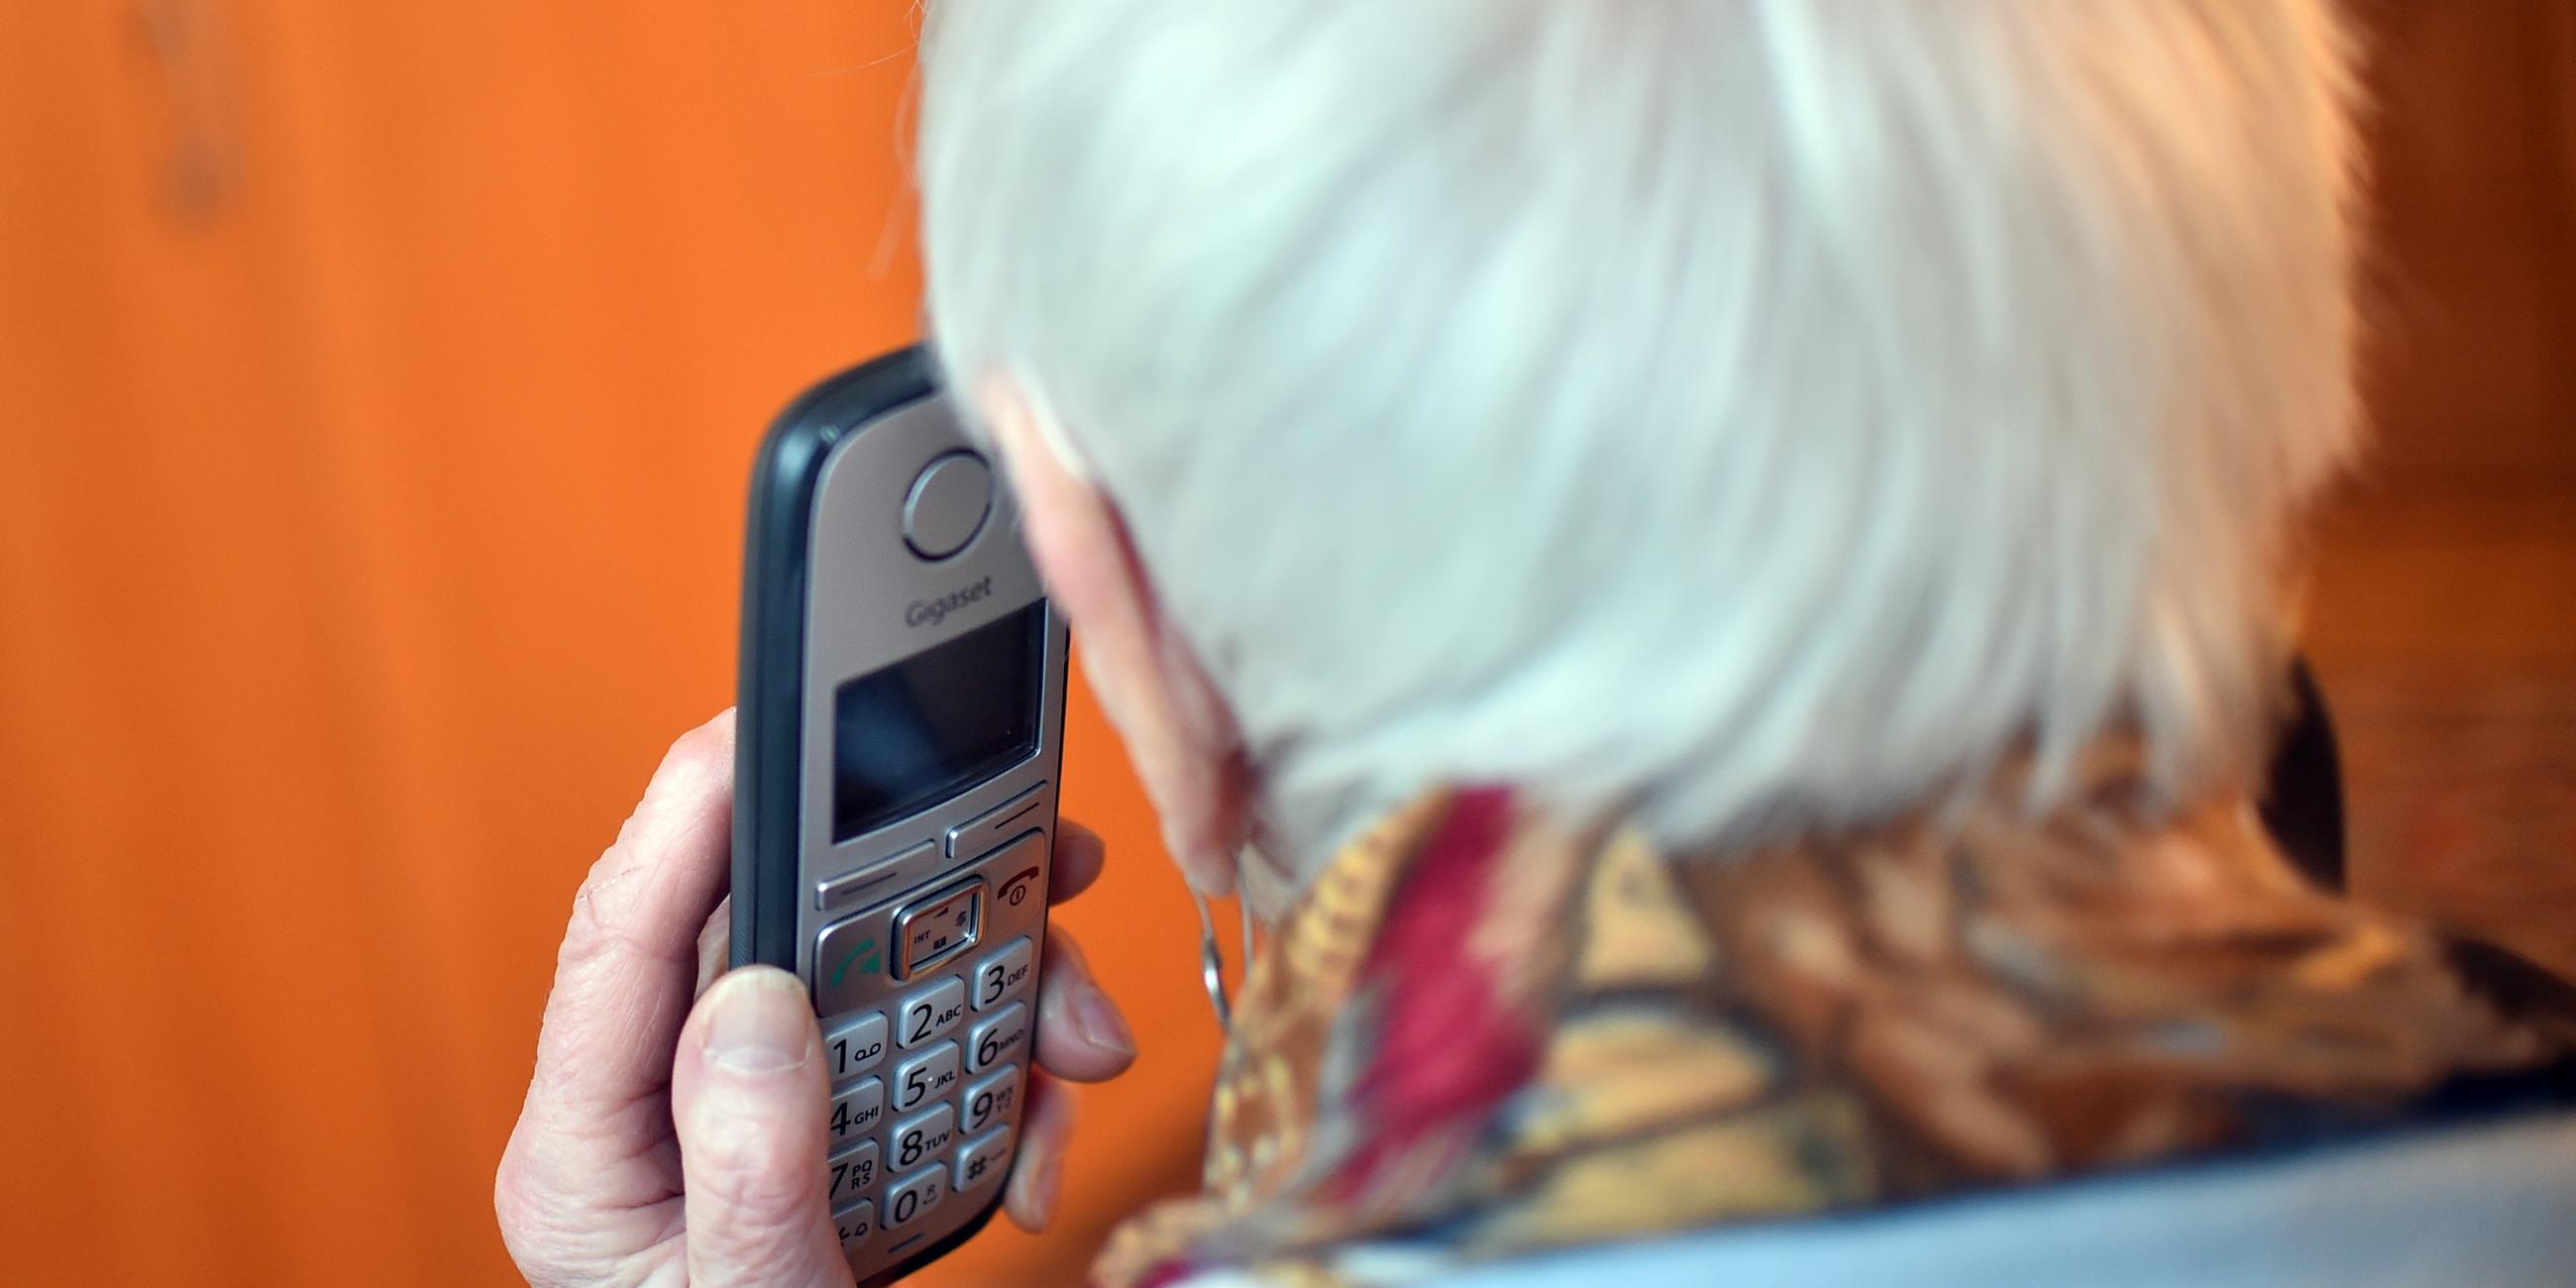 eine seniorin haelt einen telefonhoerer an ihr ohr (gestellte szene). im rahmen des projekts "silbernetz" wird einen hotline fuer einsame senioren angeboten.